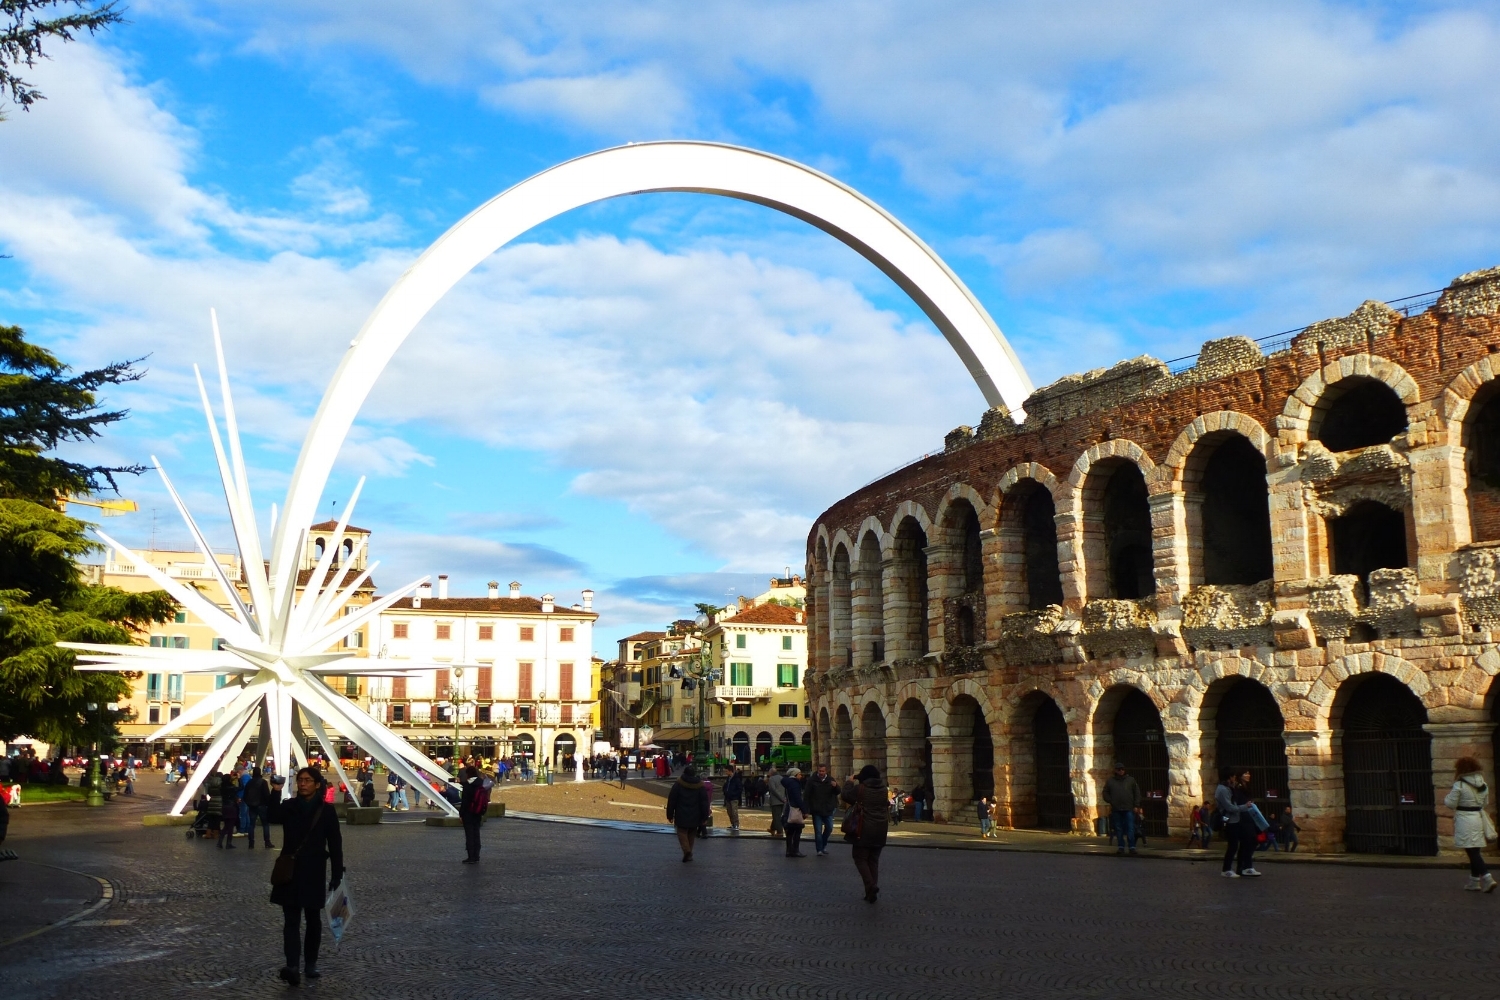  Verona's Roman Arena - Photo by C. Sturm 